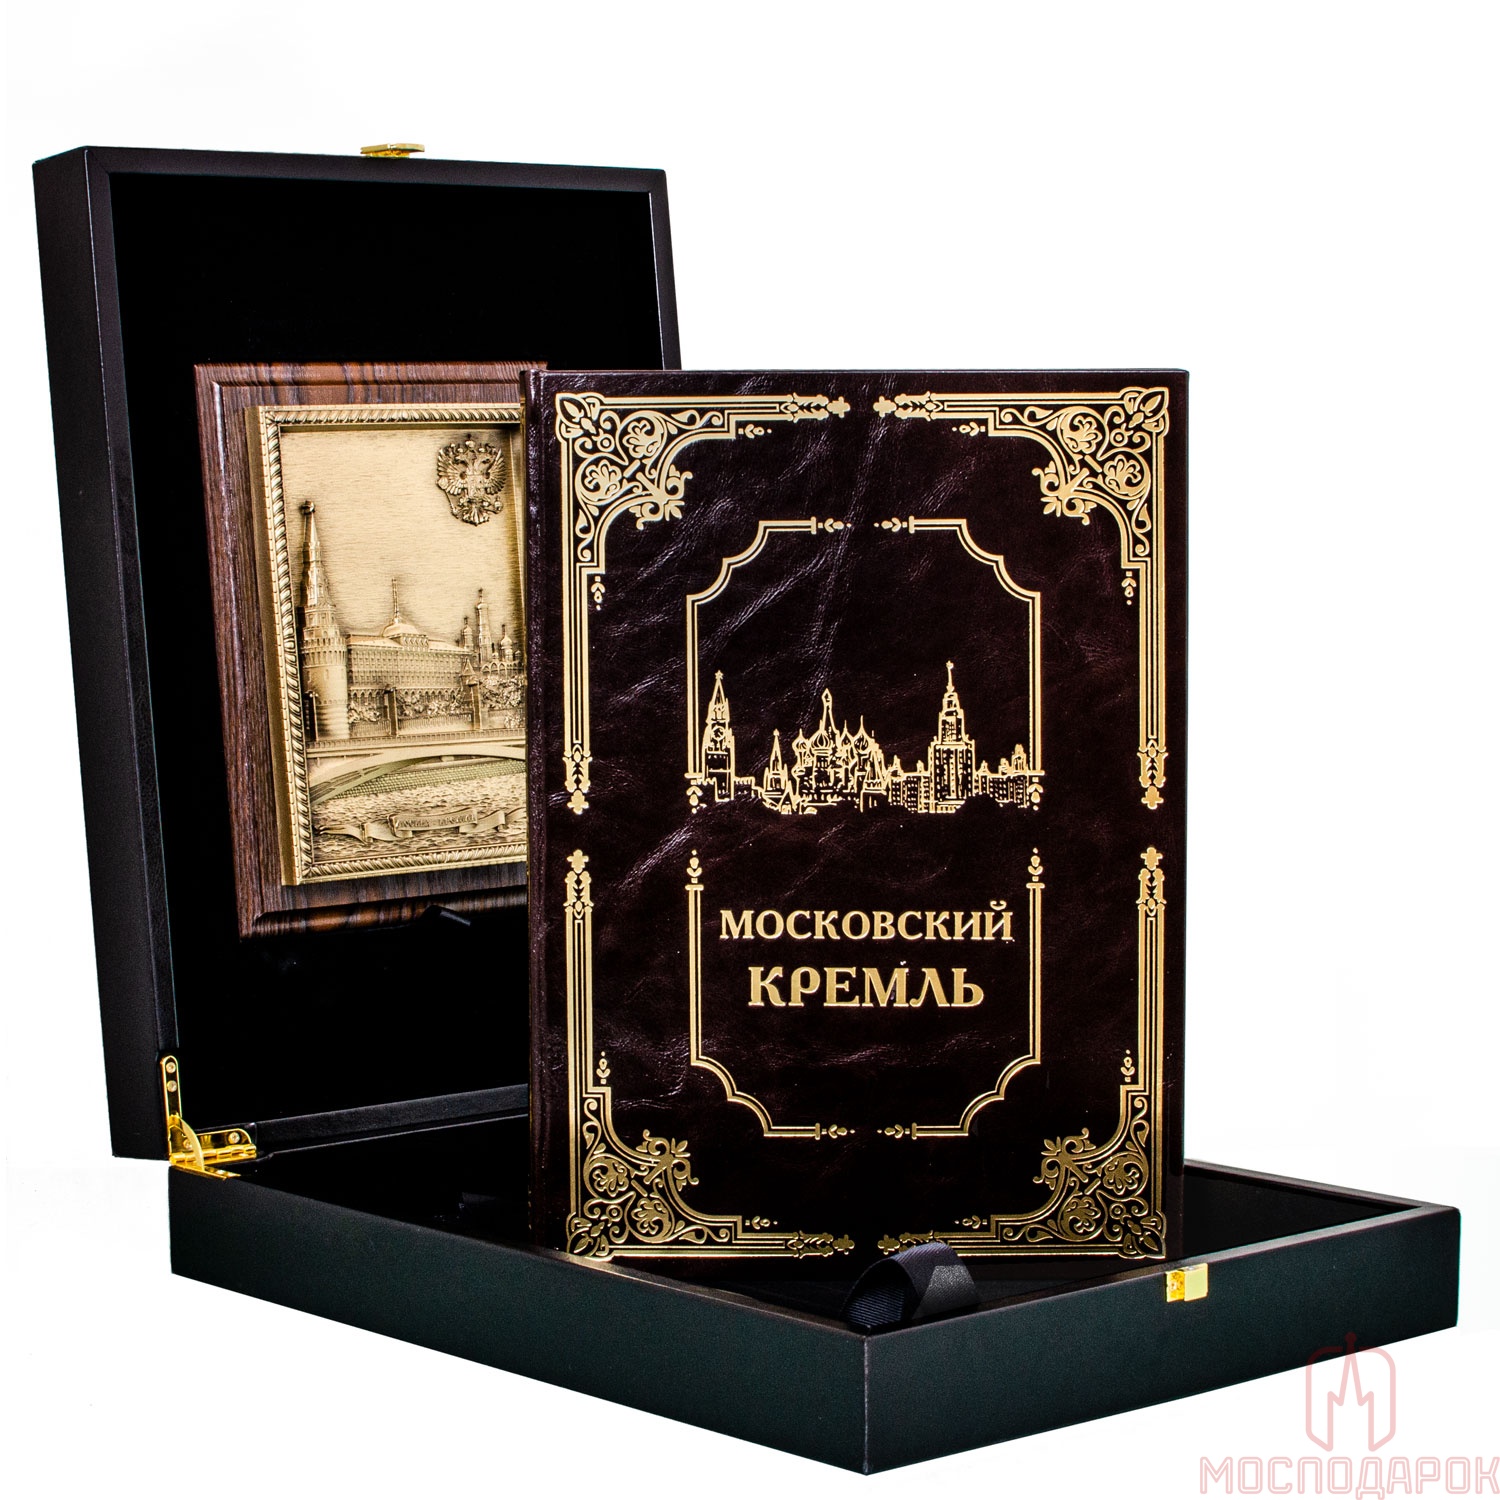 Подарочная книга "Московский Кремль" - артикул: 205380 | Мосподарок 